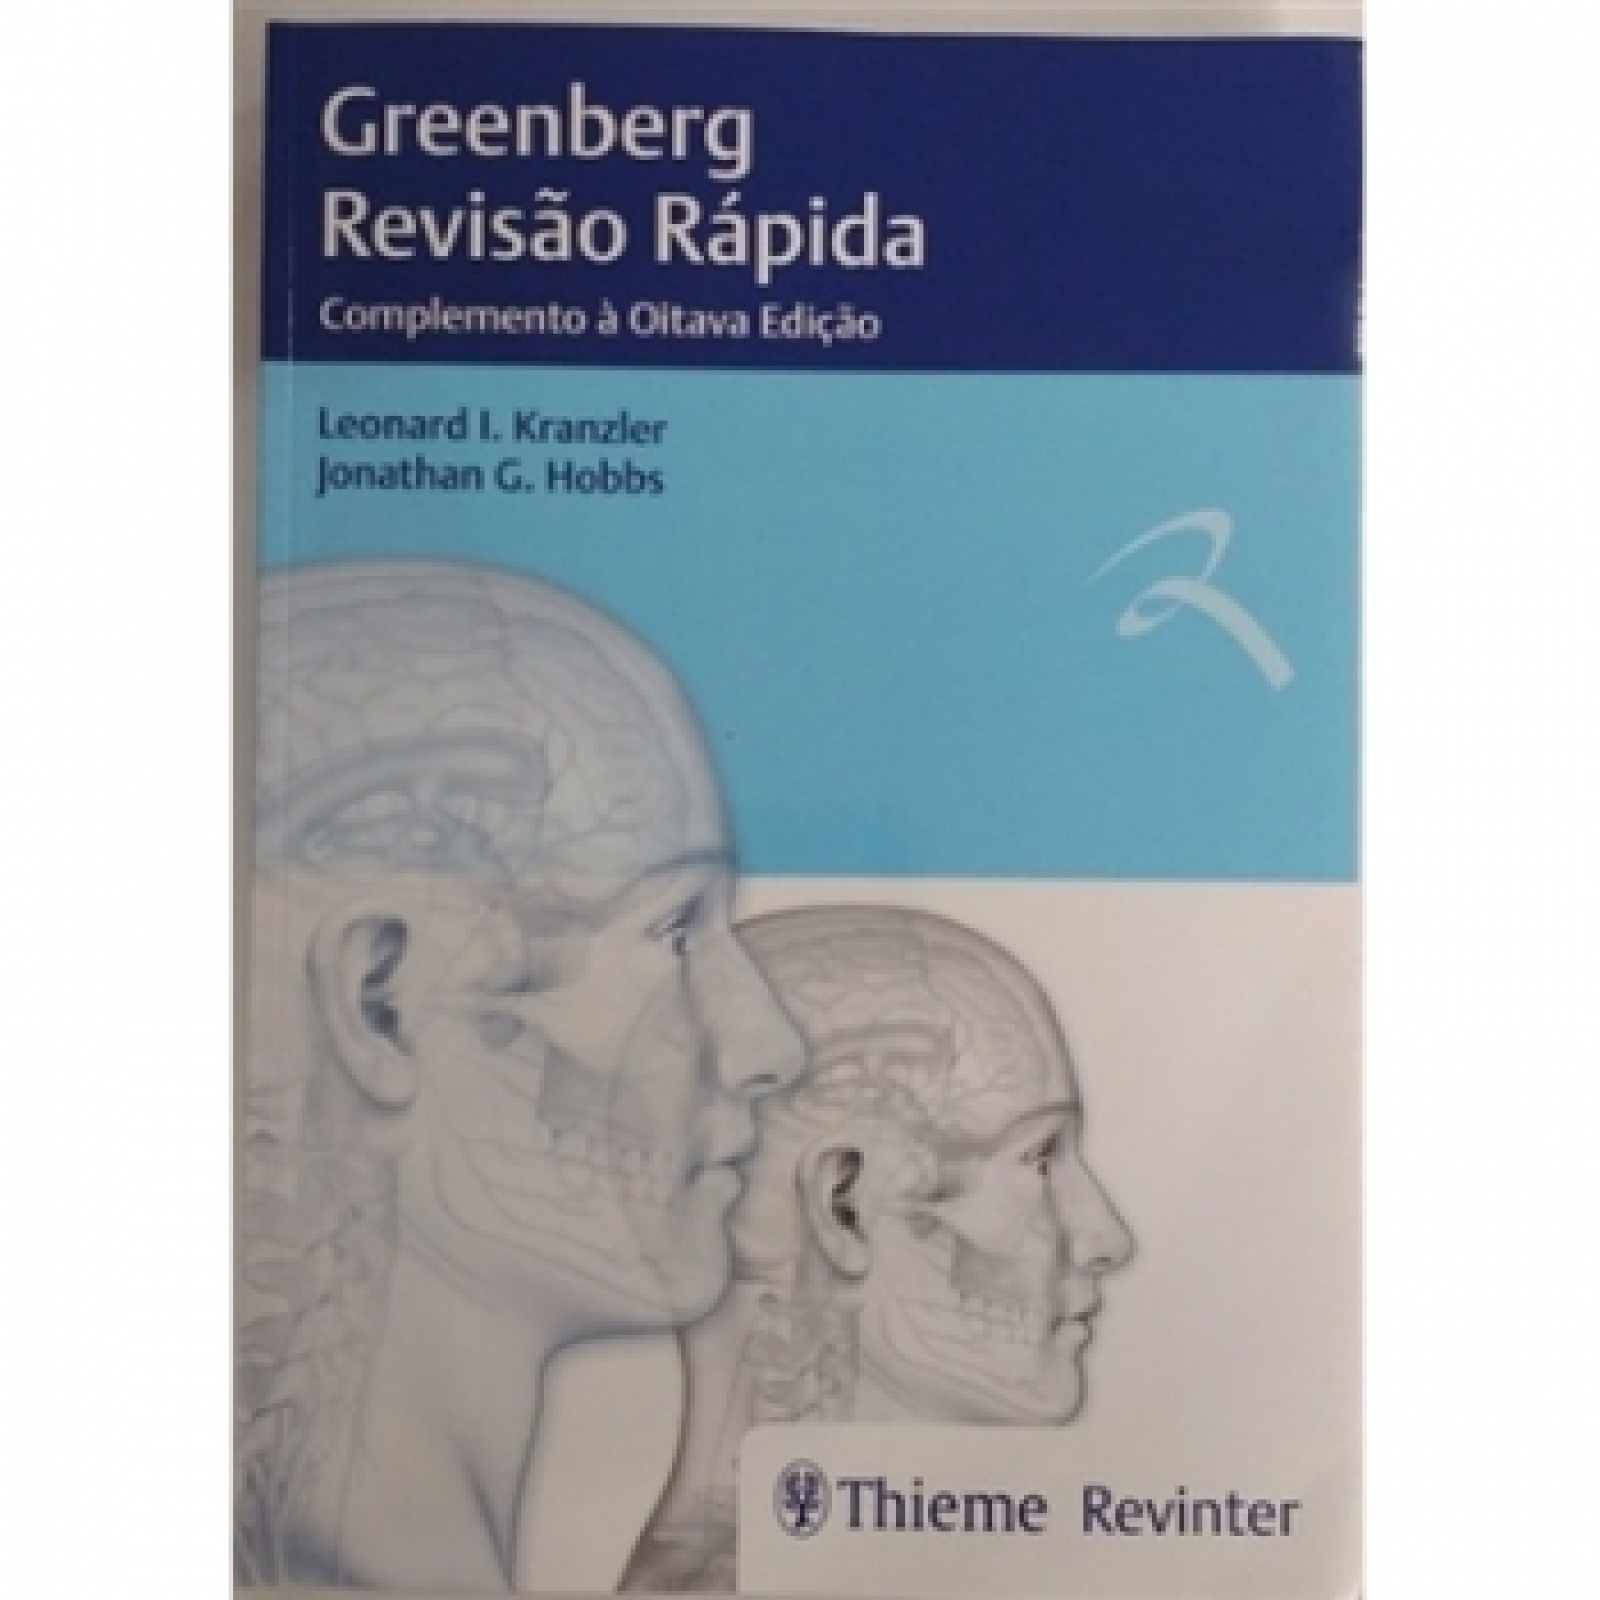 Greenberg Revisaõ Rápida - Complemento A Oitava Edição